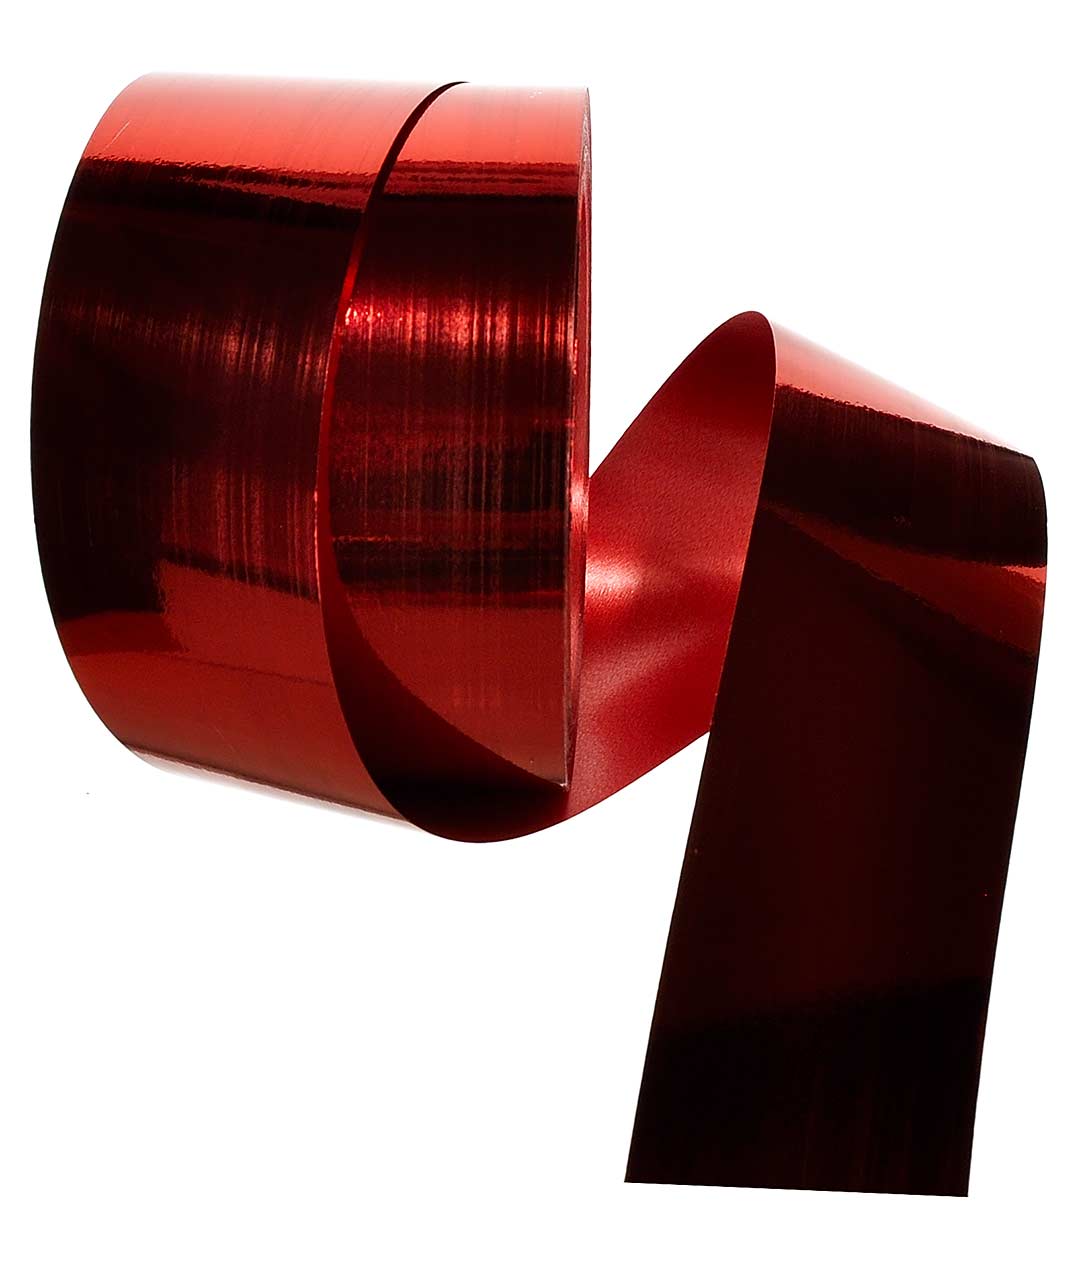 Изображение Лента полипропиленовая красная Shax метал 50 мм